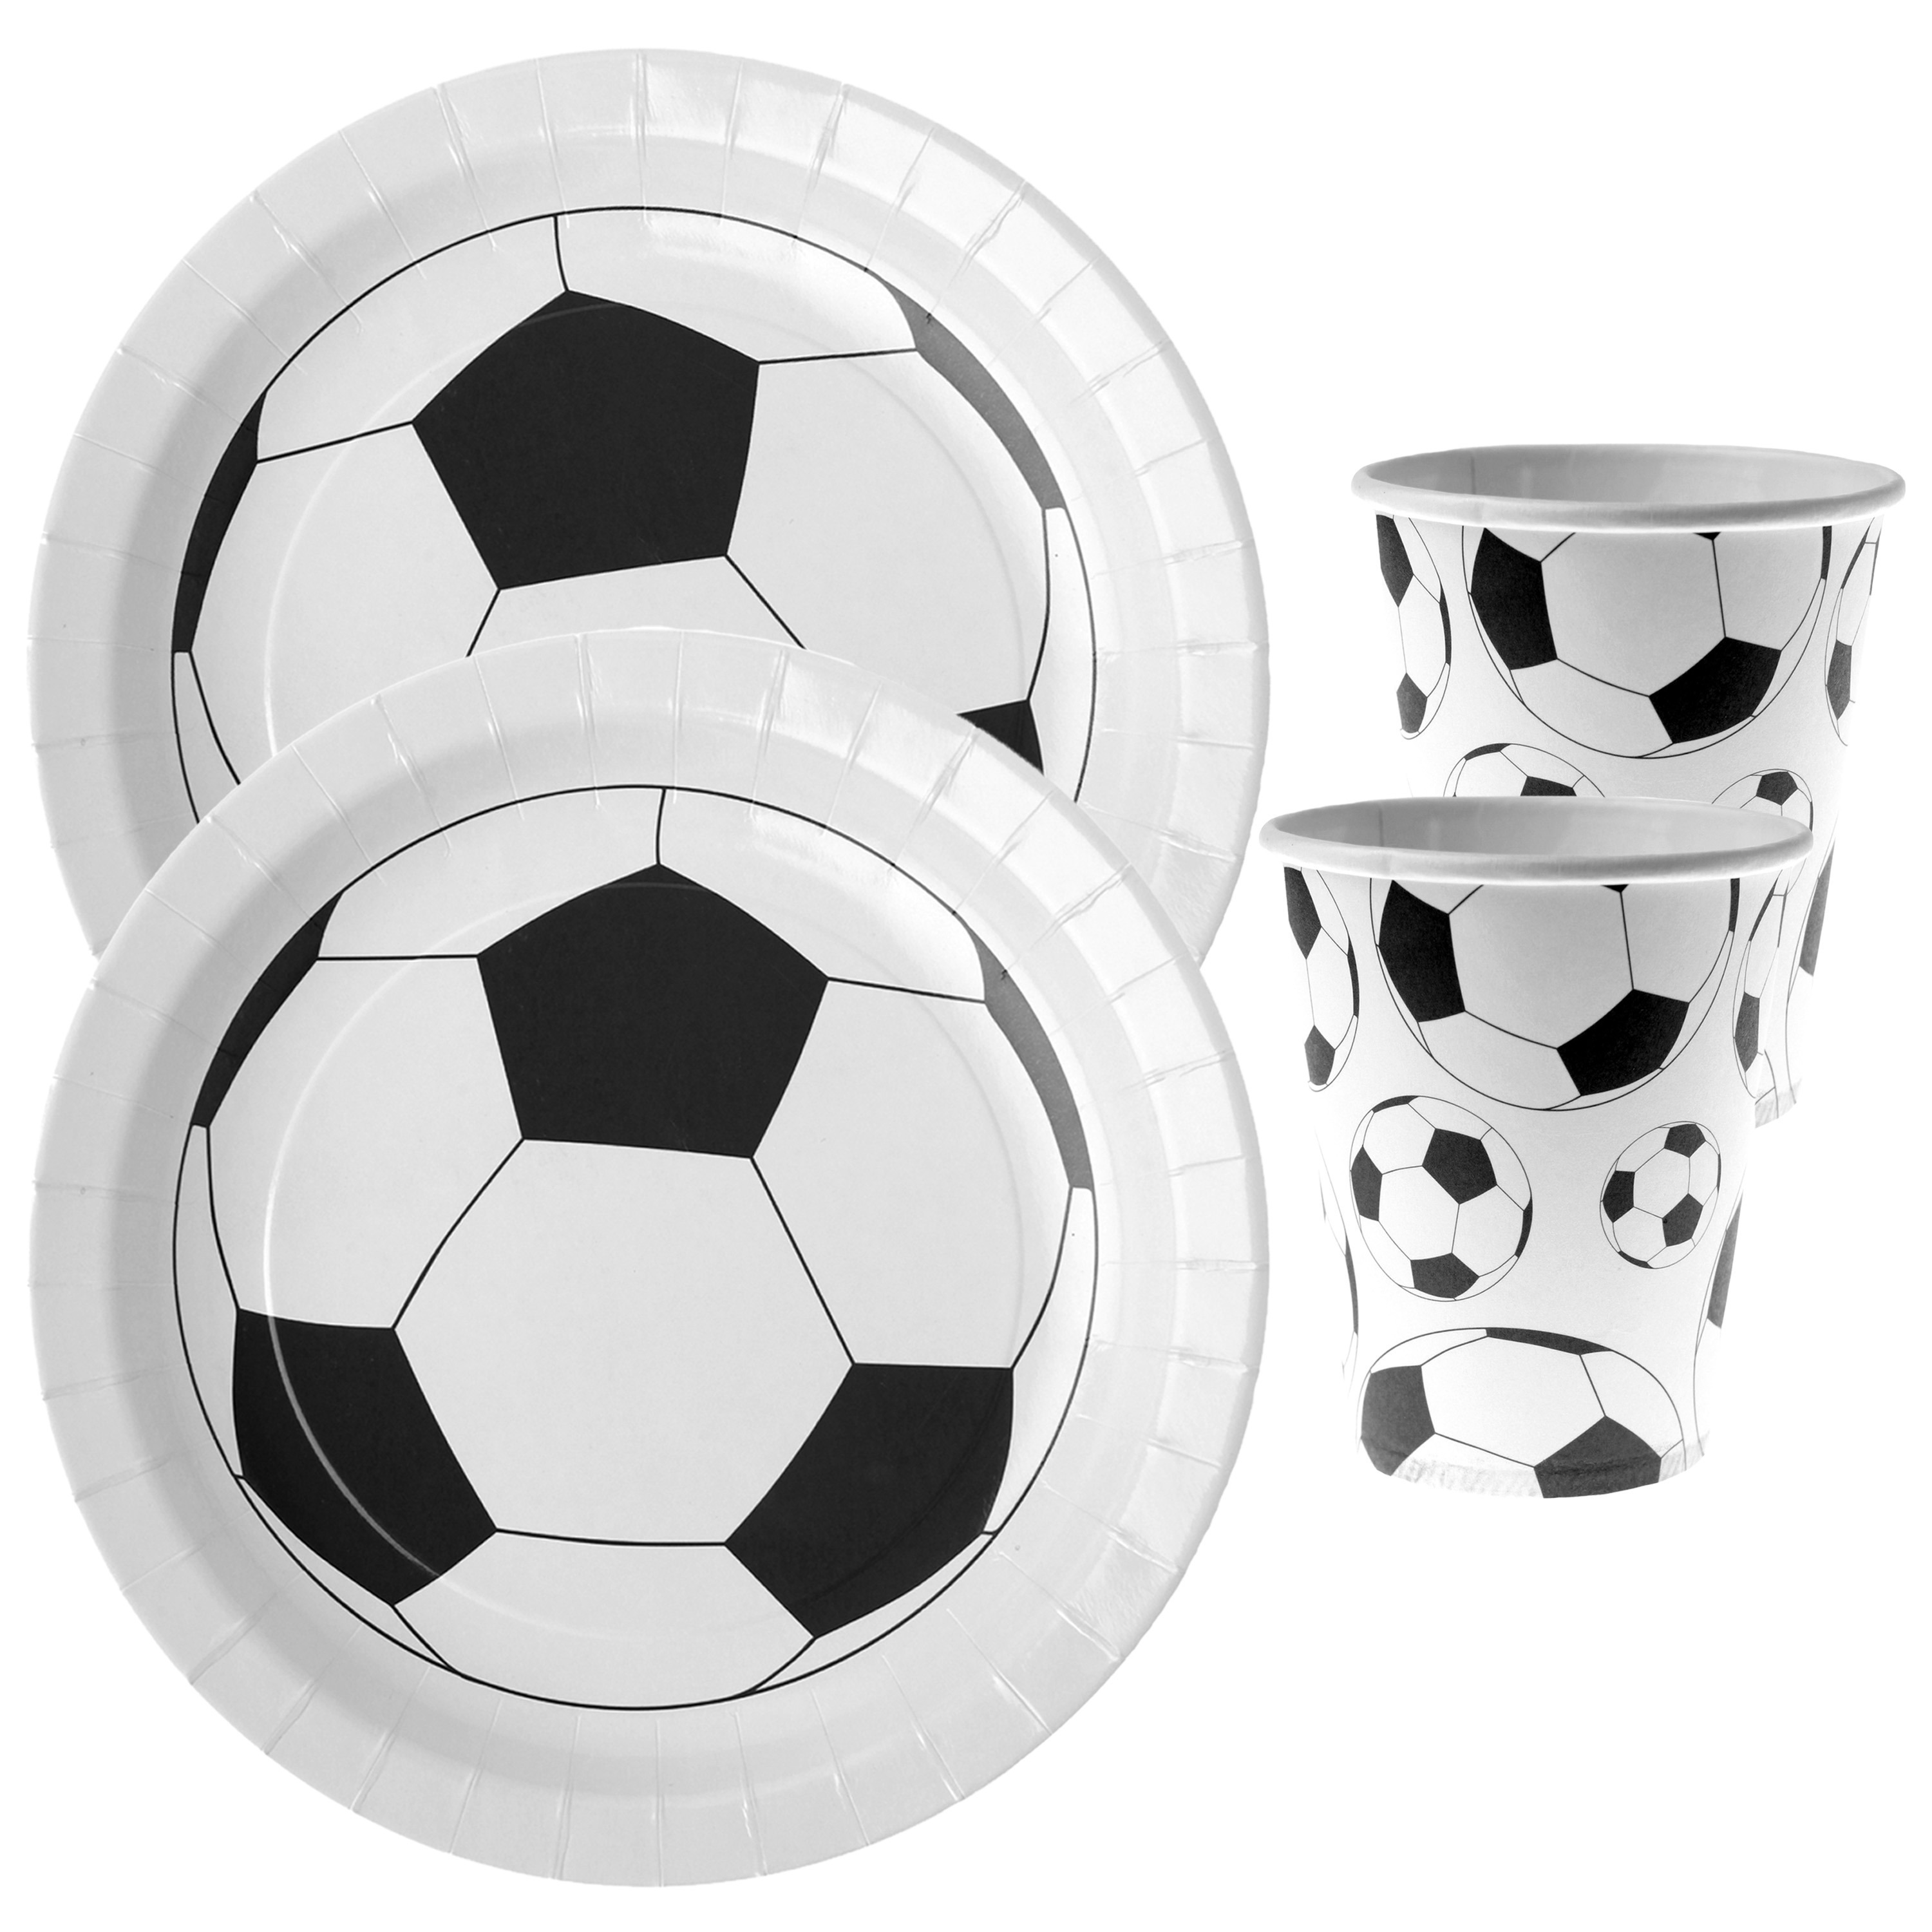 Voetbal thema feest wegwerp servies set 20x bordjes-20x bekers wit-zwart